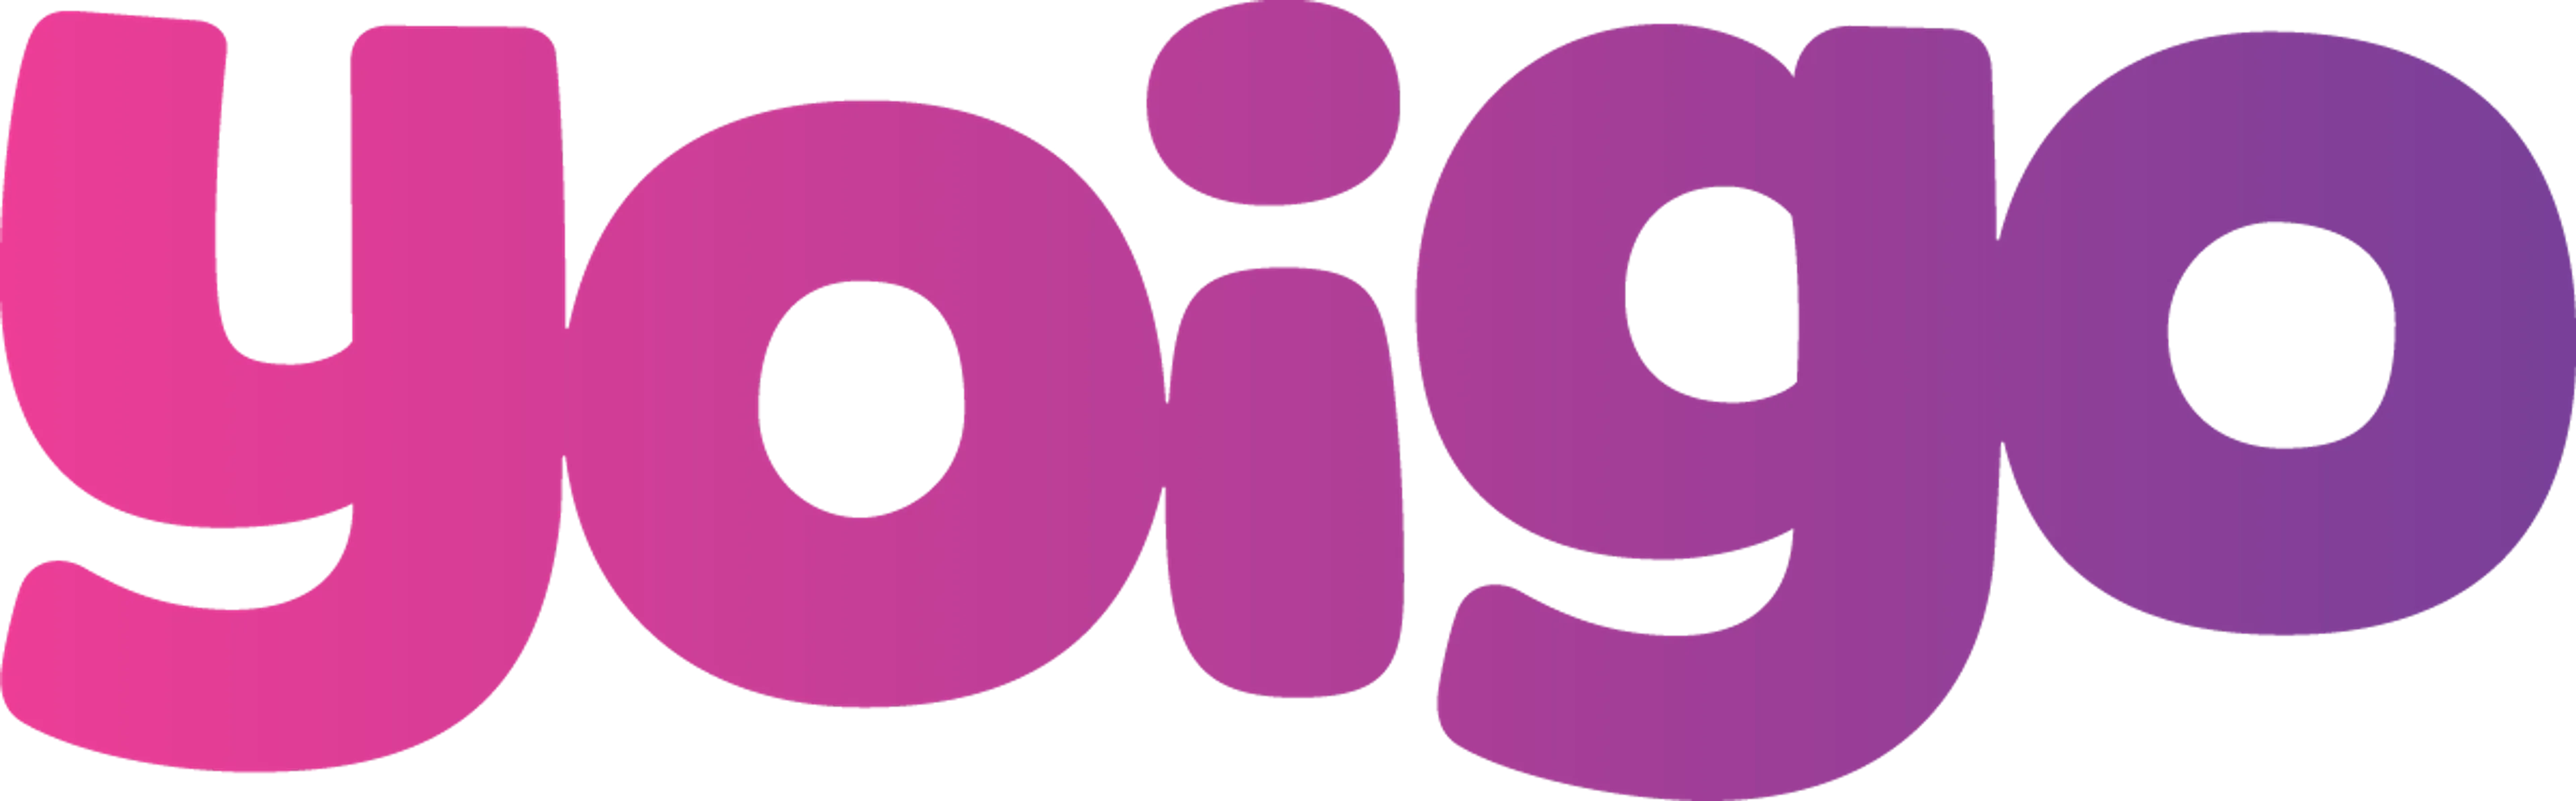 YOIGO logo